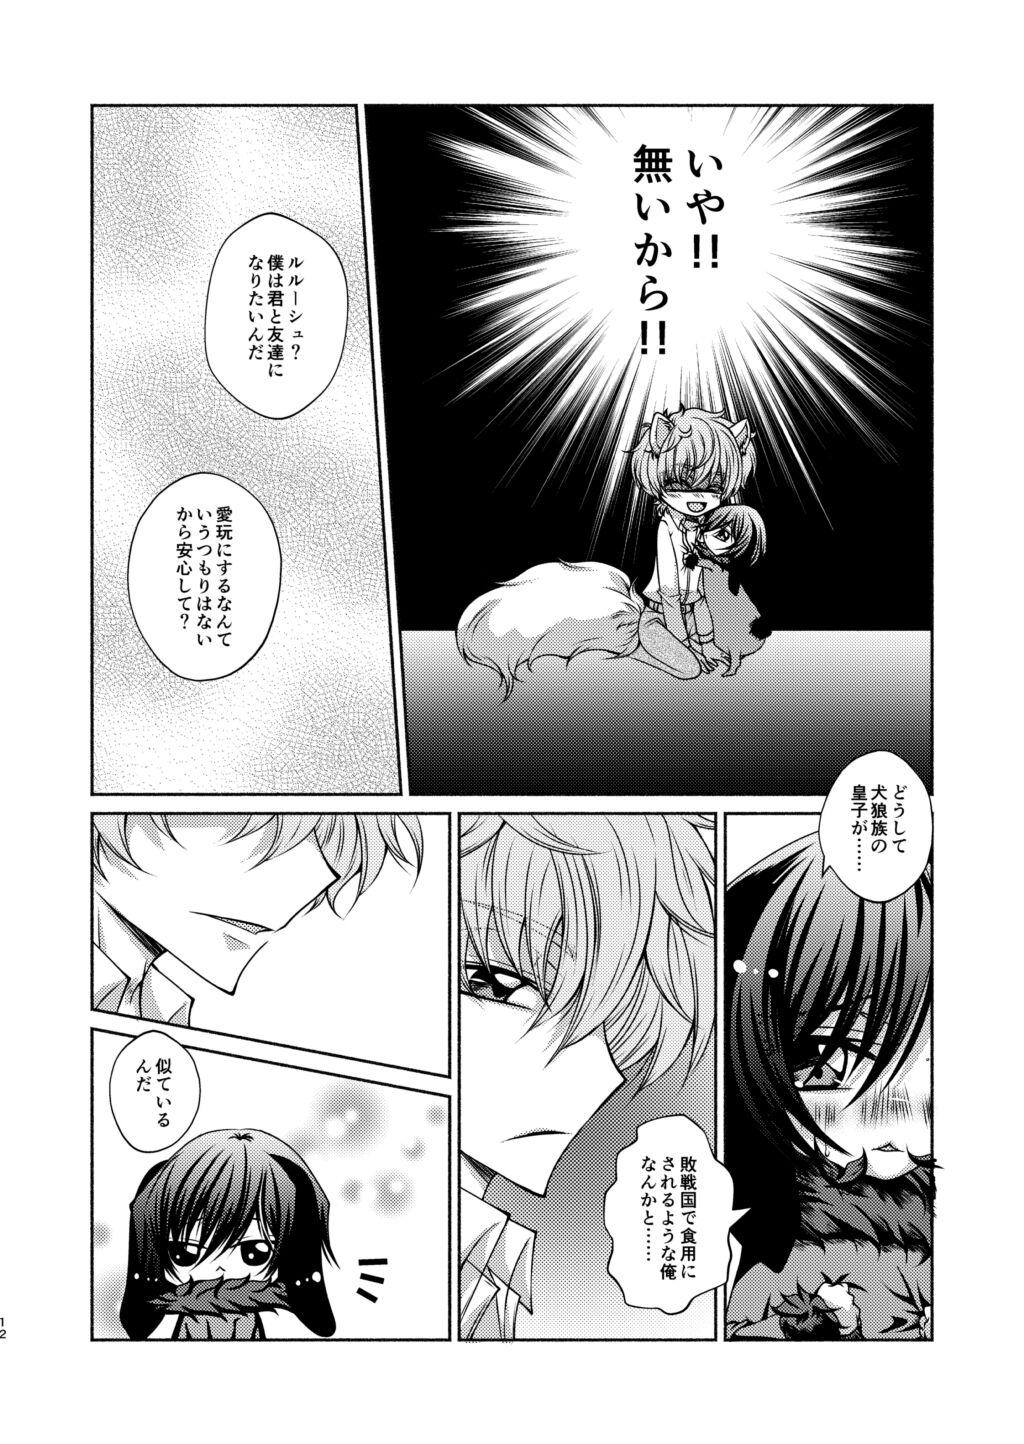 Banging Ookami Suzaku X Kuro Usagi Lelouch Tsume - Code geass Chacal - Page 10